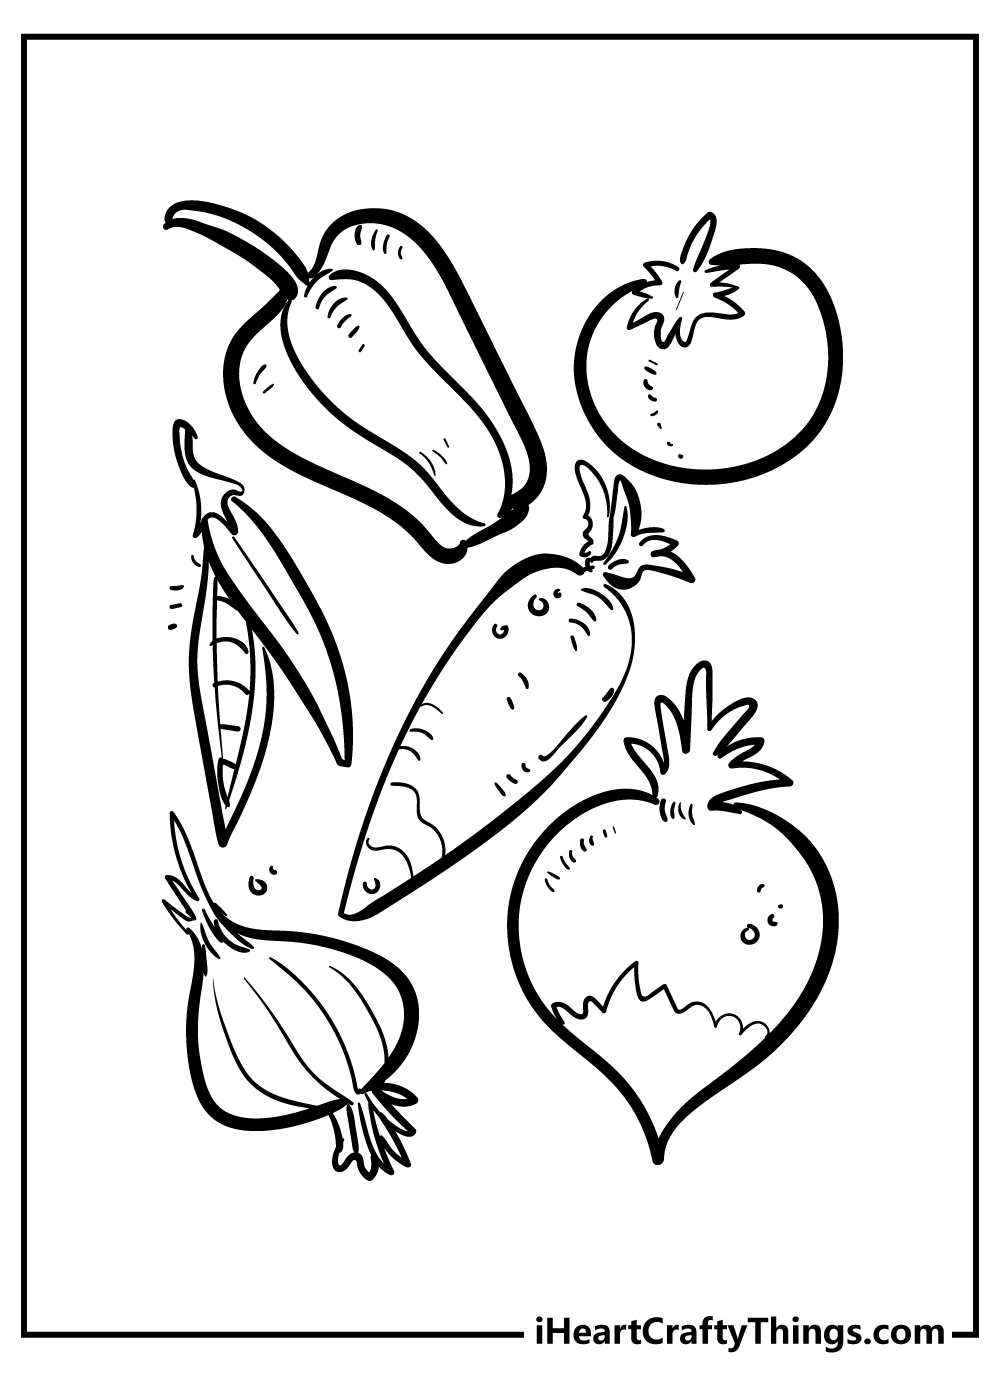 Vegetables Coloring Original Sheet for children free download